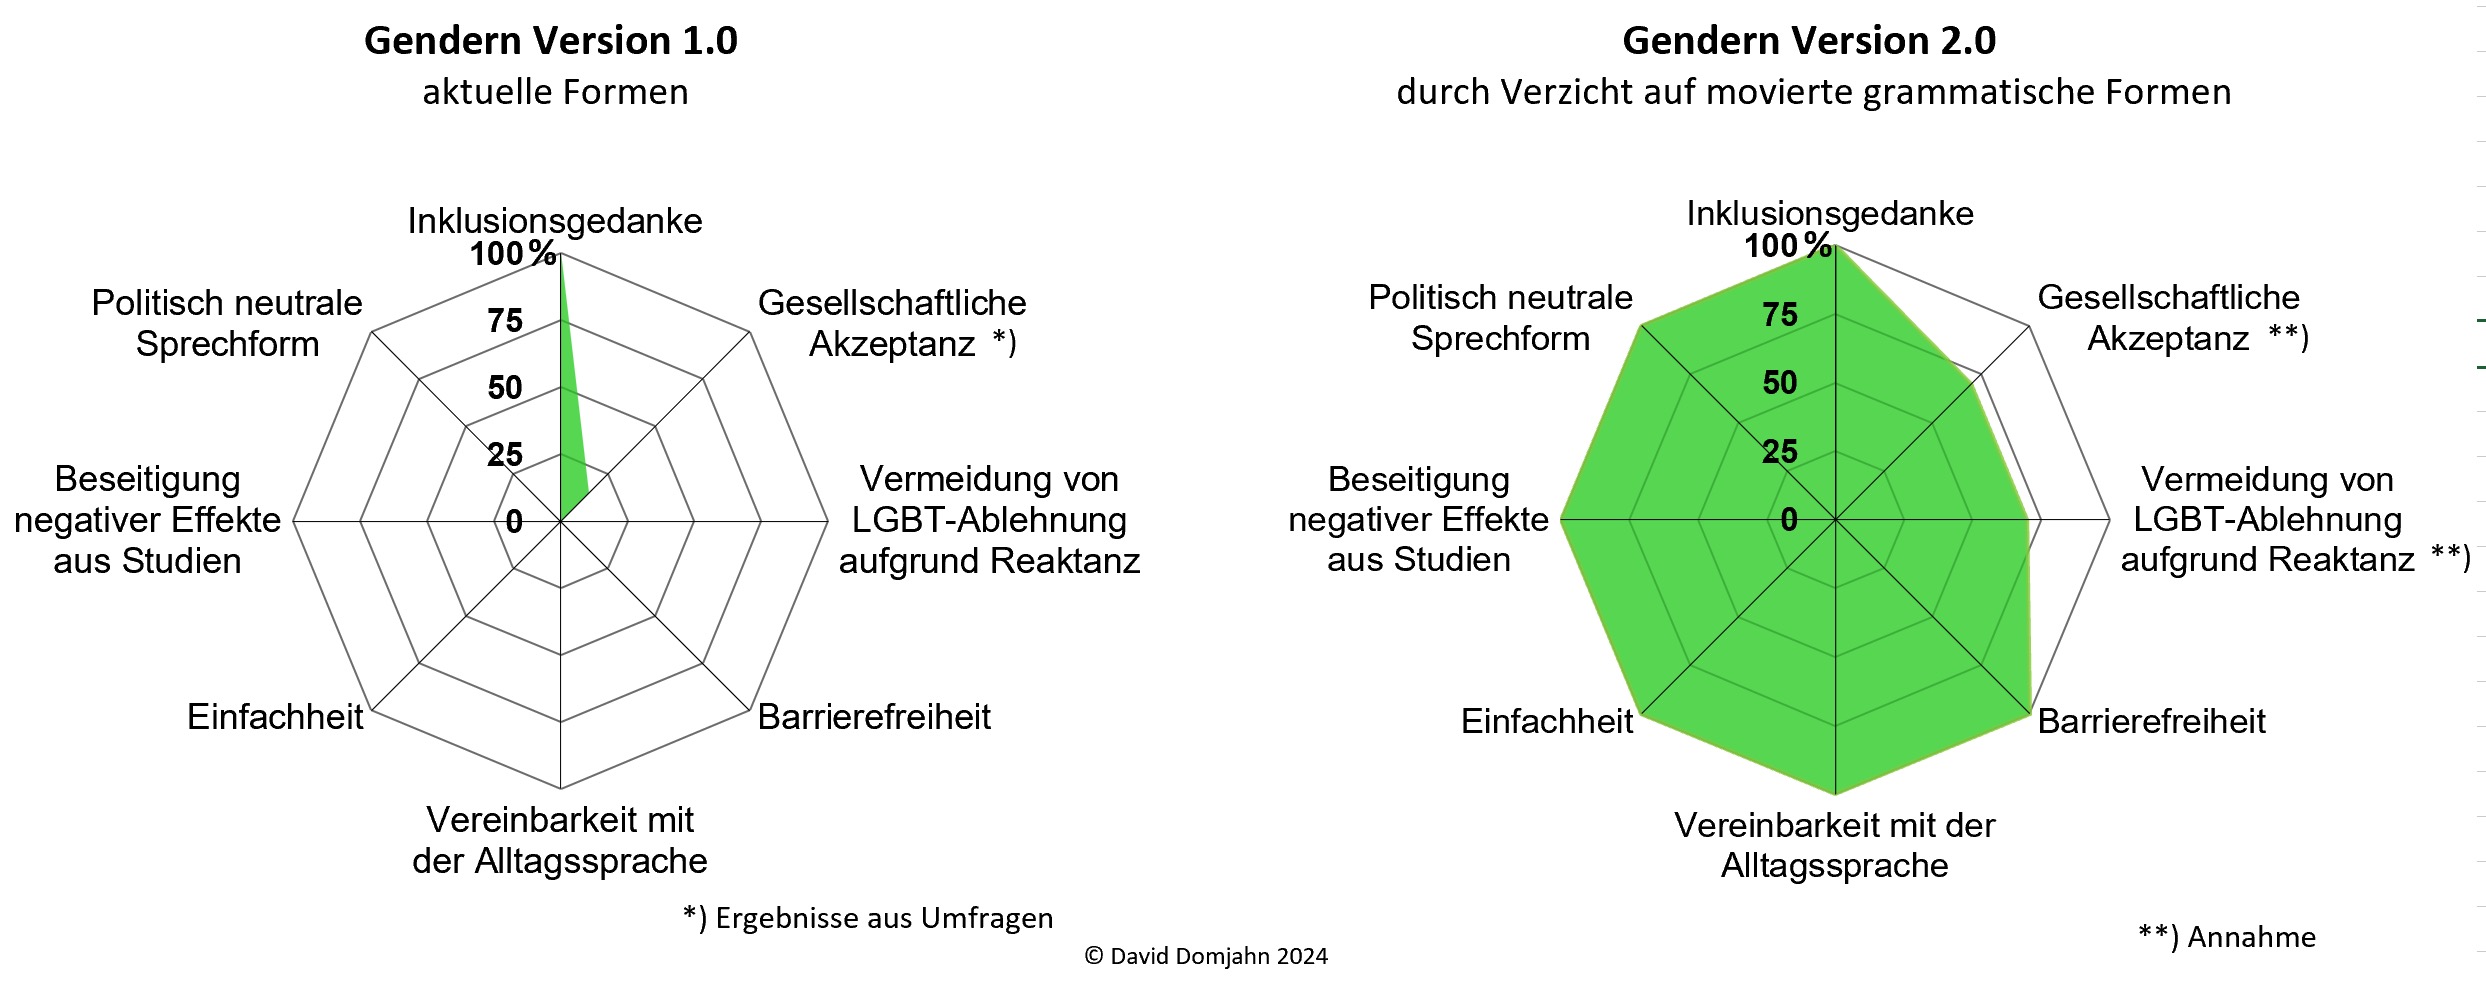 Tortengrafik mit Vergleich von aktuellen Formen von Gendern 1.0 mit einer barrierefreien Form Version 2